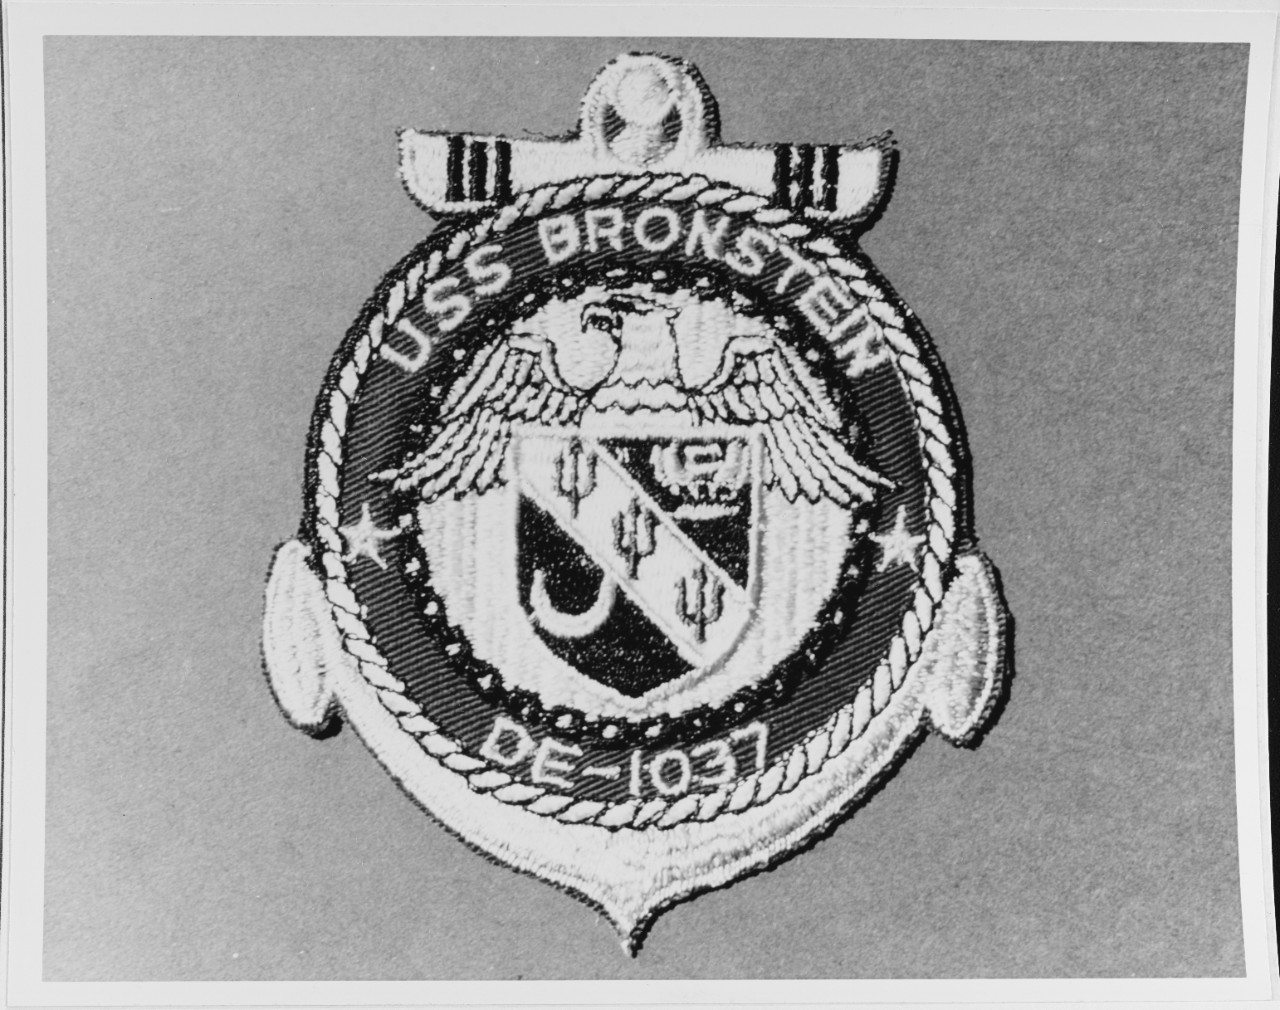 Insignia: USS BRONSTEIN (DE - 1037)